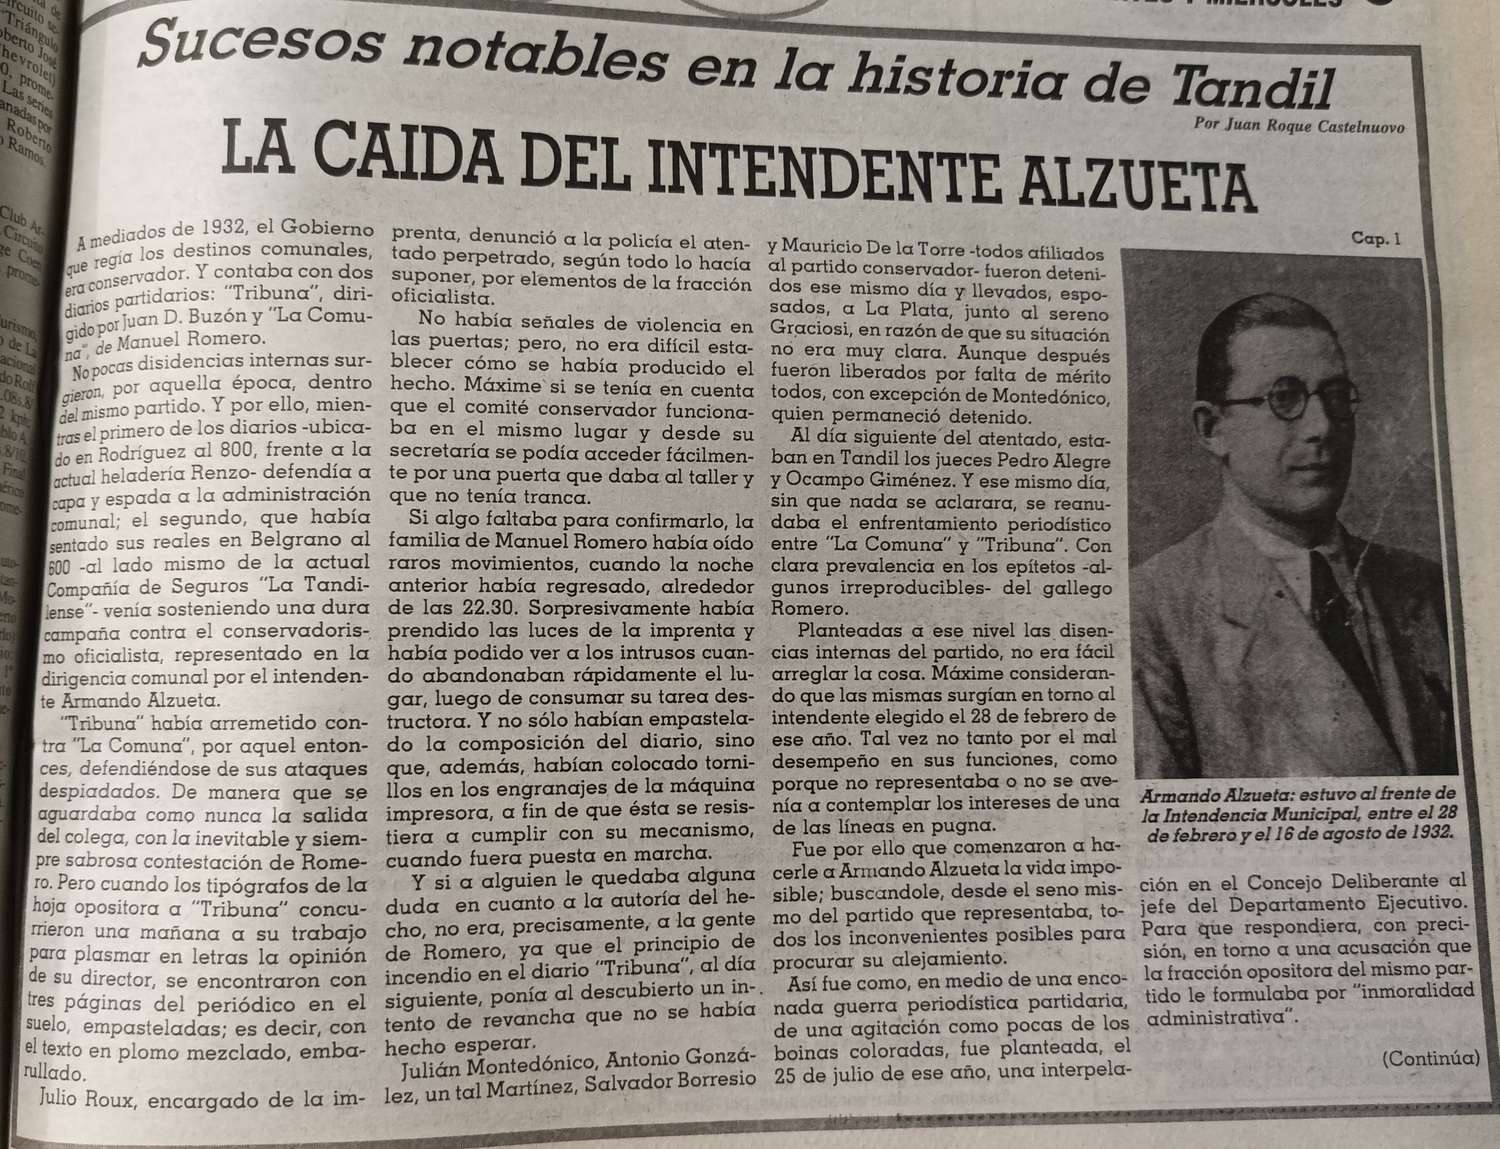 La caída del intendente Alzueta - Cap. 1